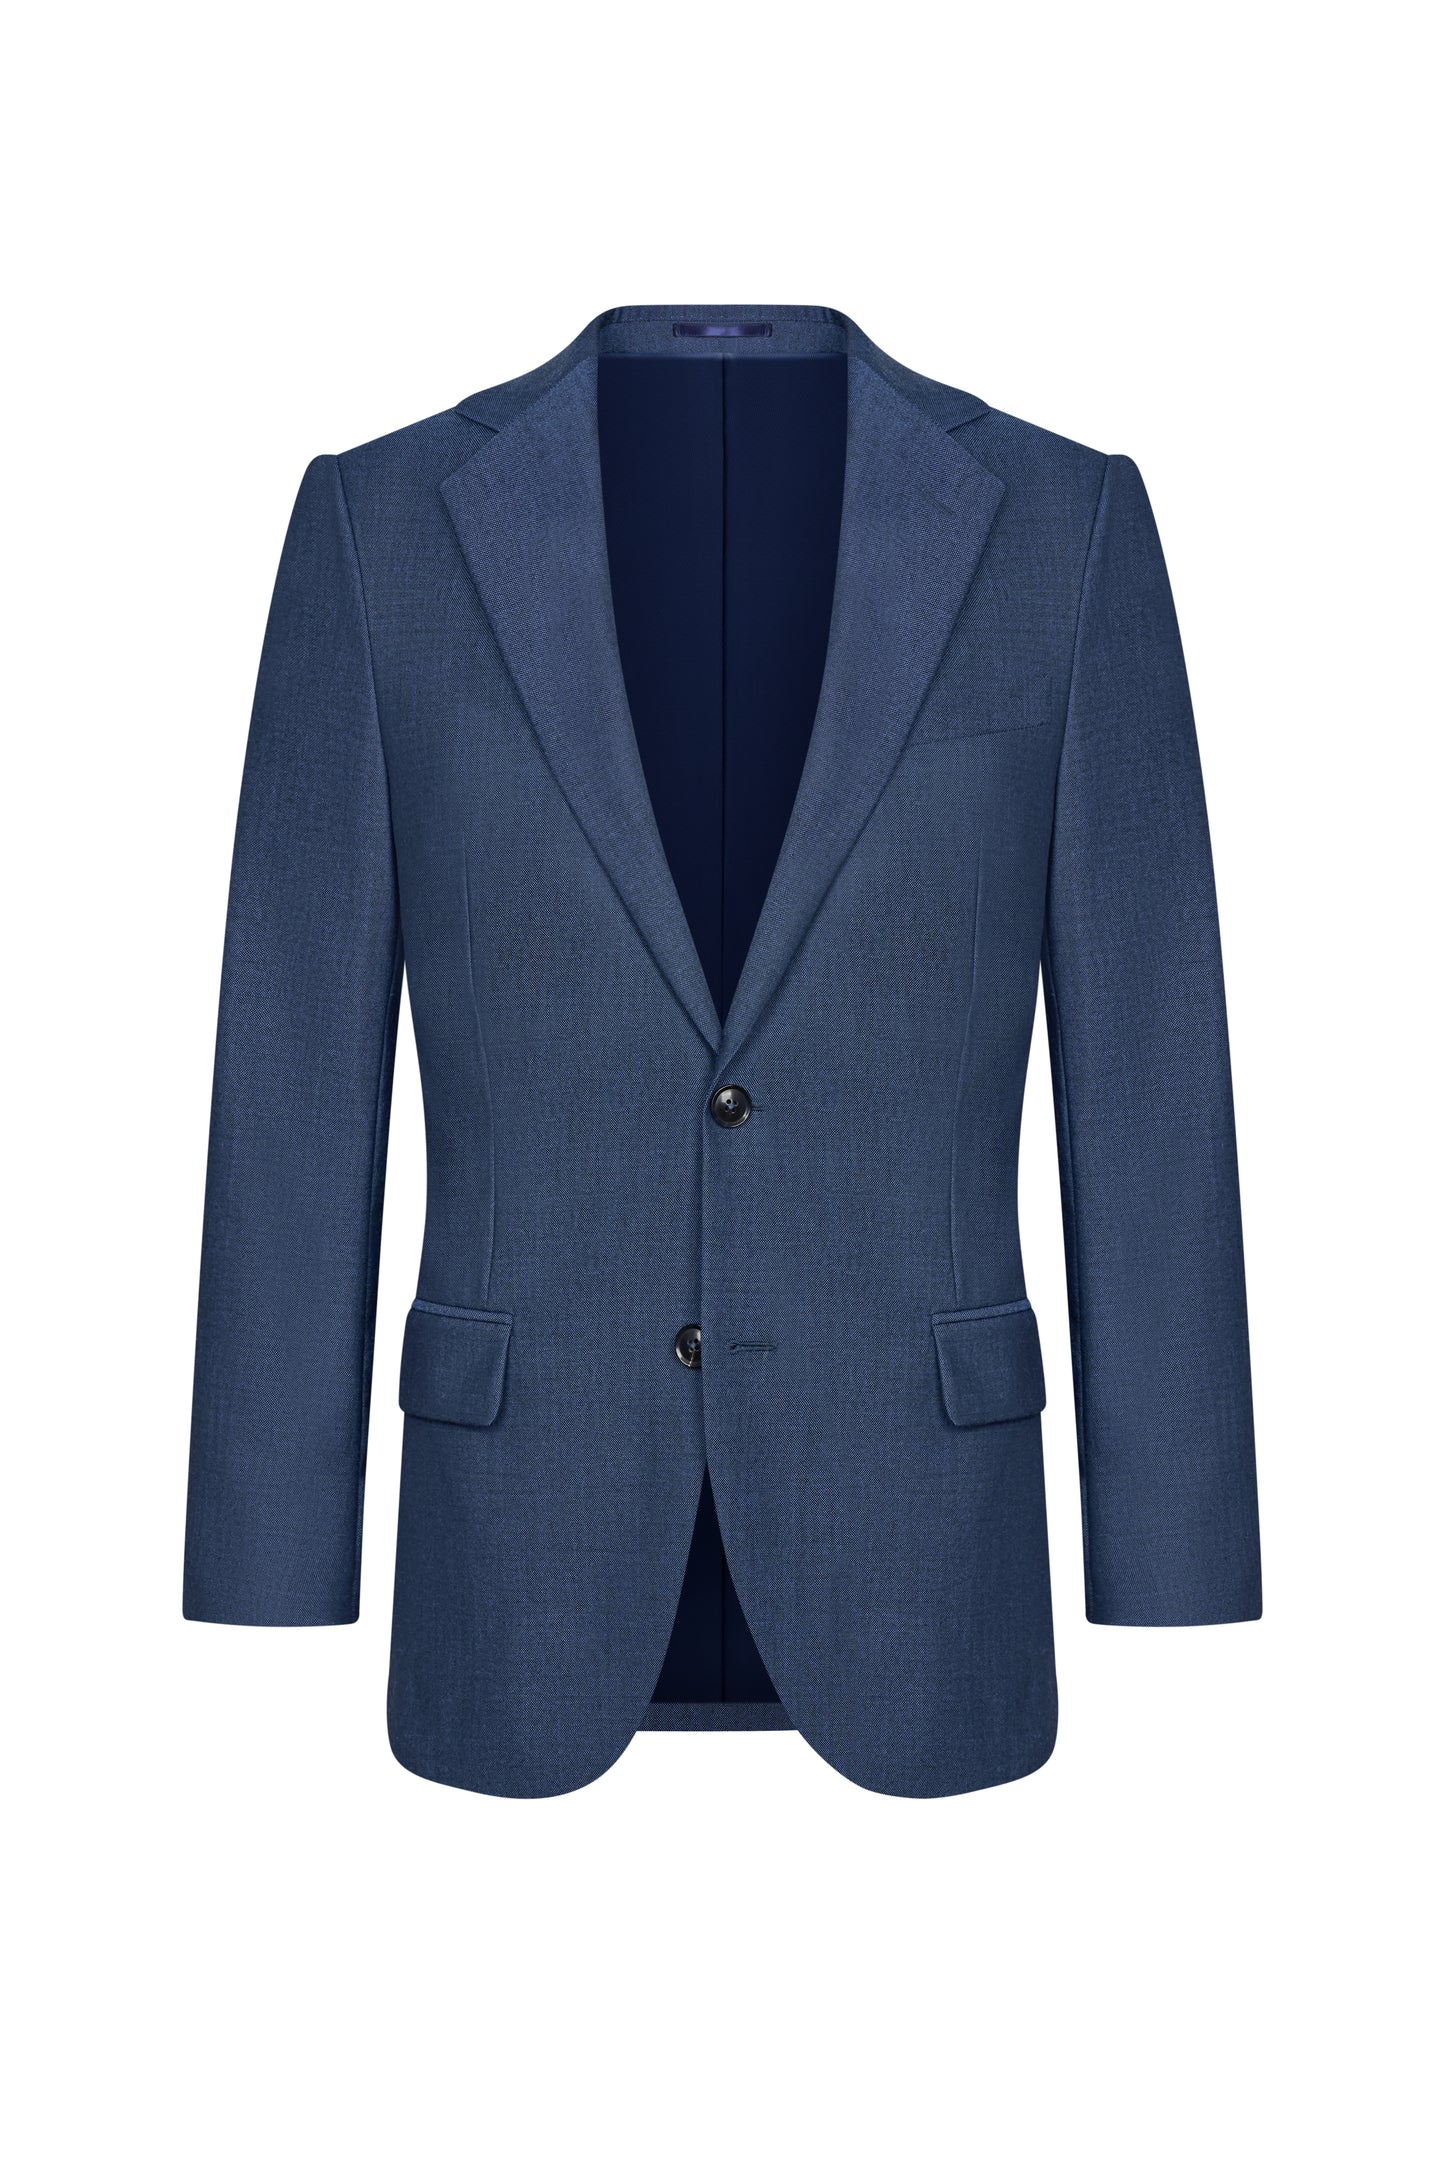 Holland & Sherry Tonic Blue Hopsack Custom Suit